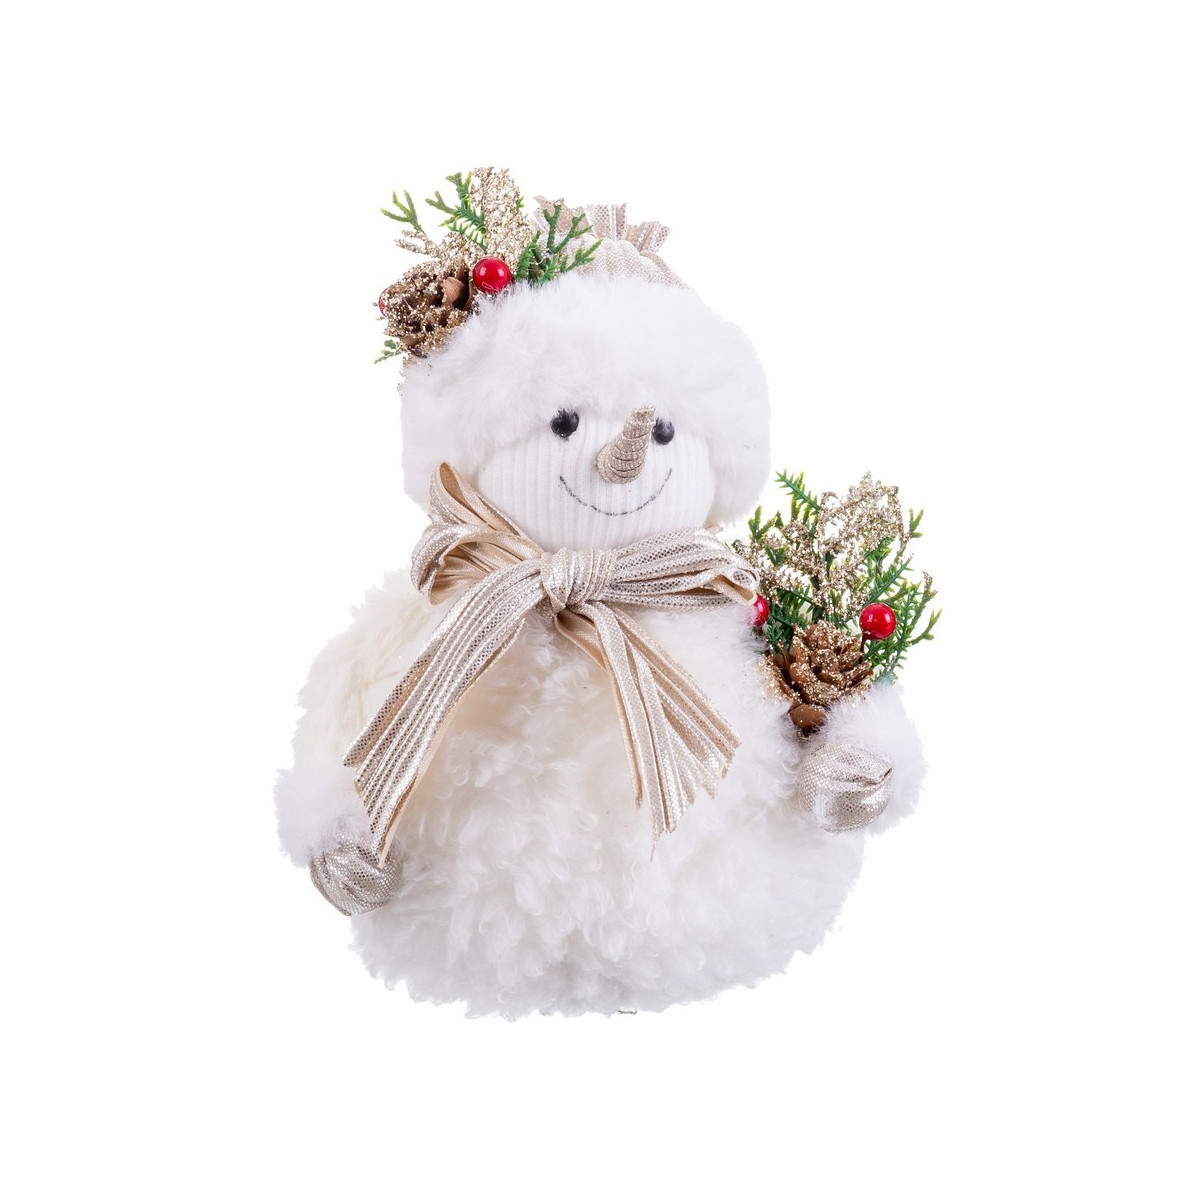 Muñeco nieve con acebo 15 x 11 x 18 cm